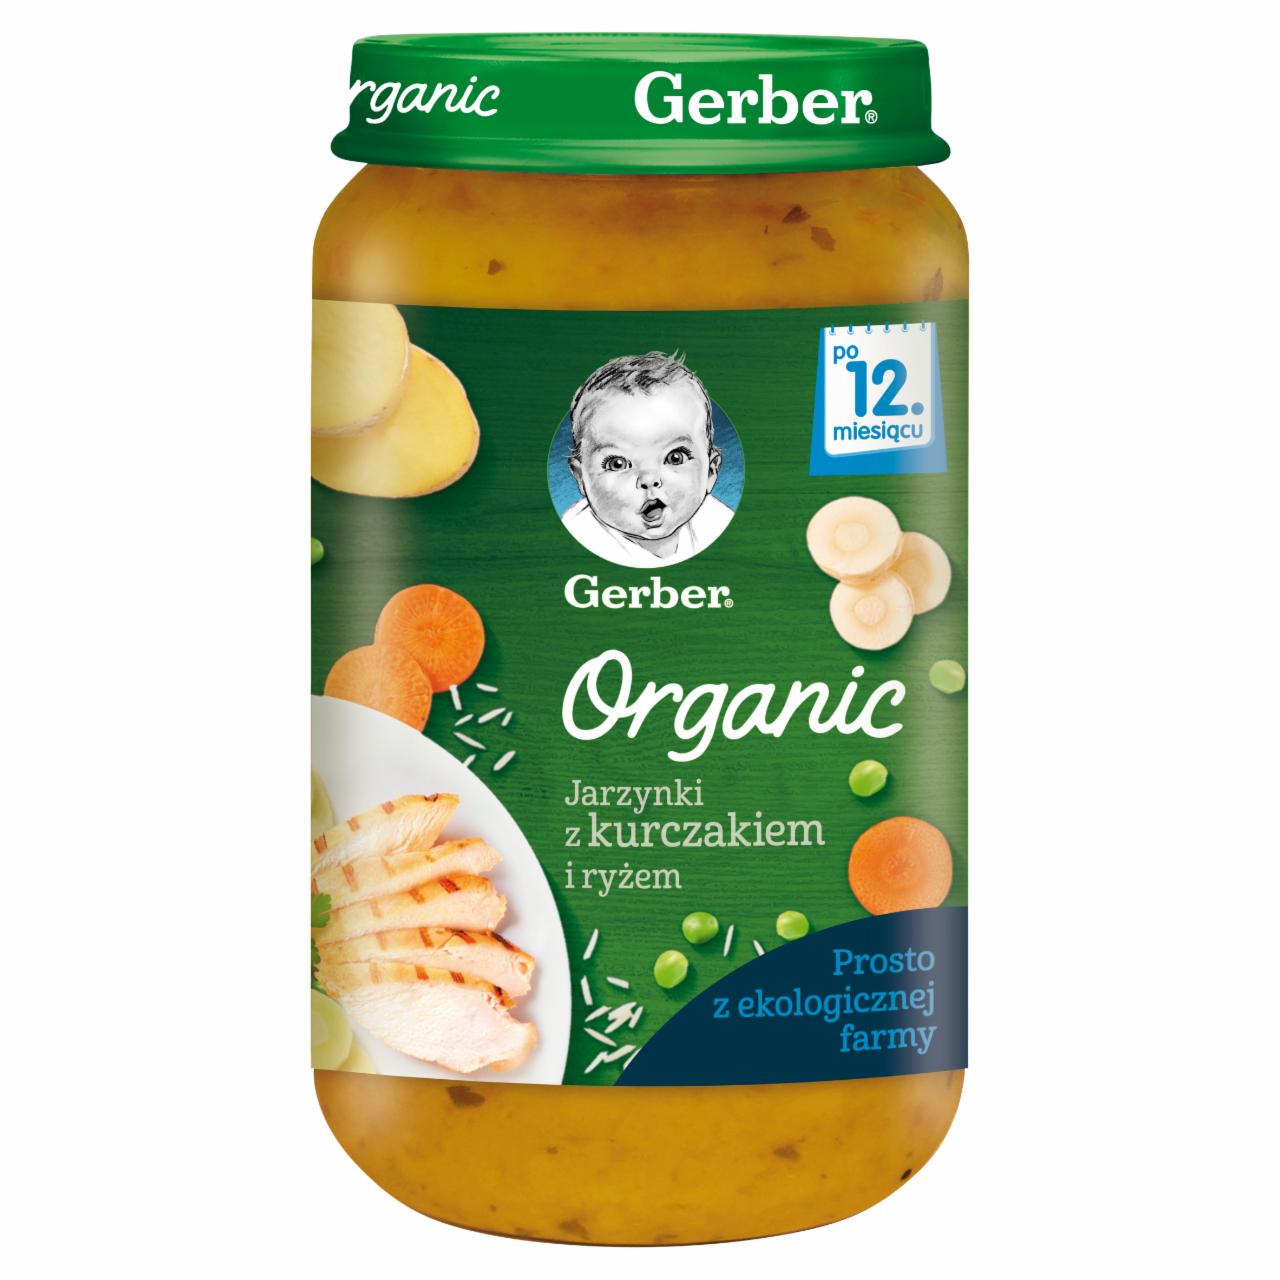 Zdjęcia - Gerber Organic Jarzynki z kurczakiem i ryżem dla dzieci po 12. miesiącu 250 g